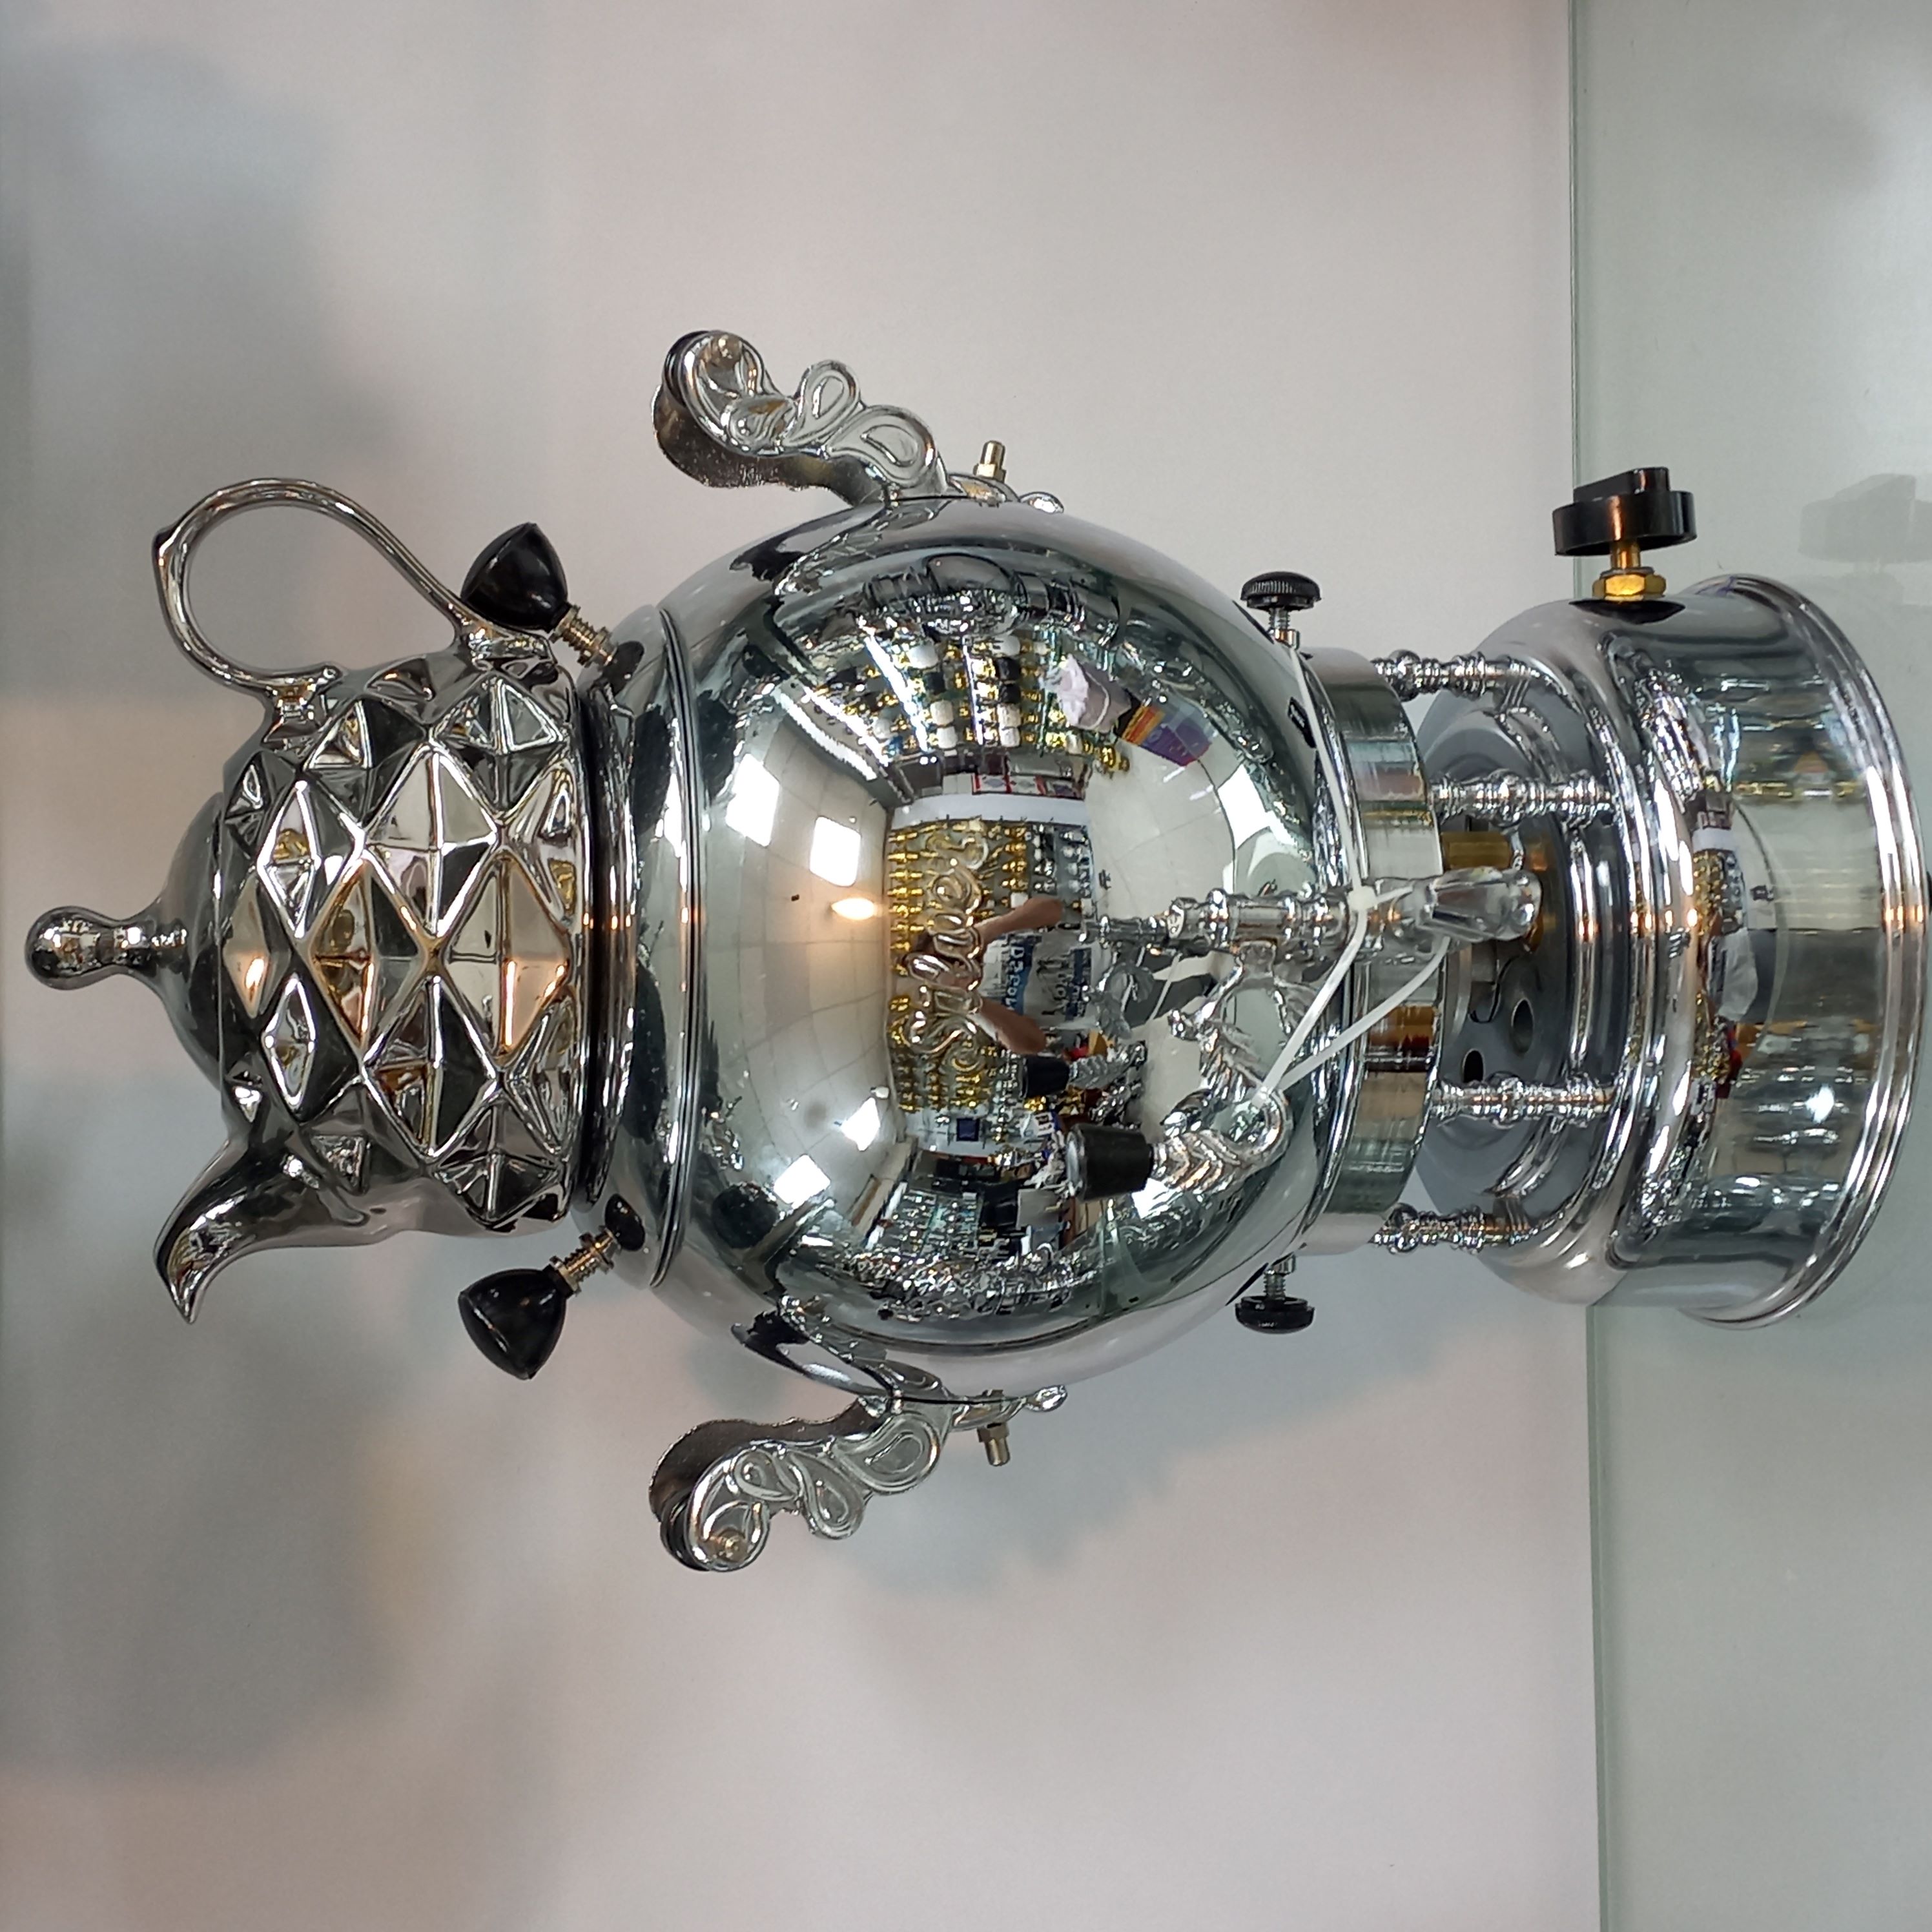 سماور گازی سیلور مدل توپی کروم ترموکوپل دار 6 لیتری